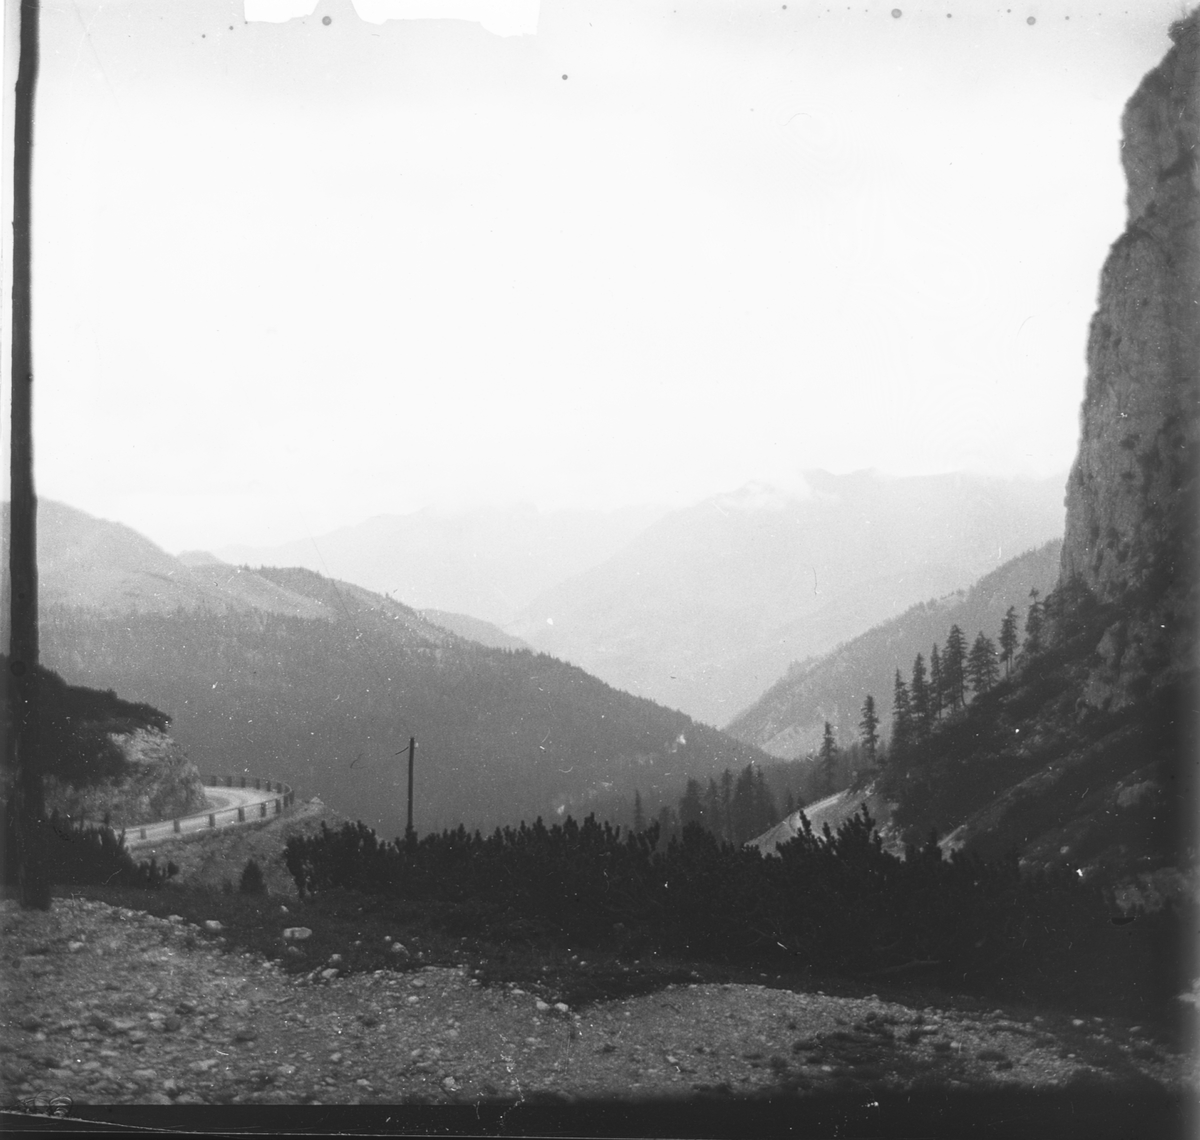 Skioptikonbild med motiv av vy över bergskedja och bergspass, Sydtyrolen.
Bilden har förvarats i kartong märkt: Resan 1909. Meran- Caster.9. N 24.